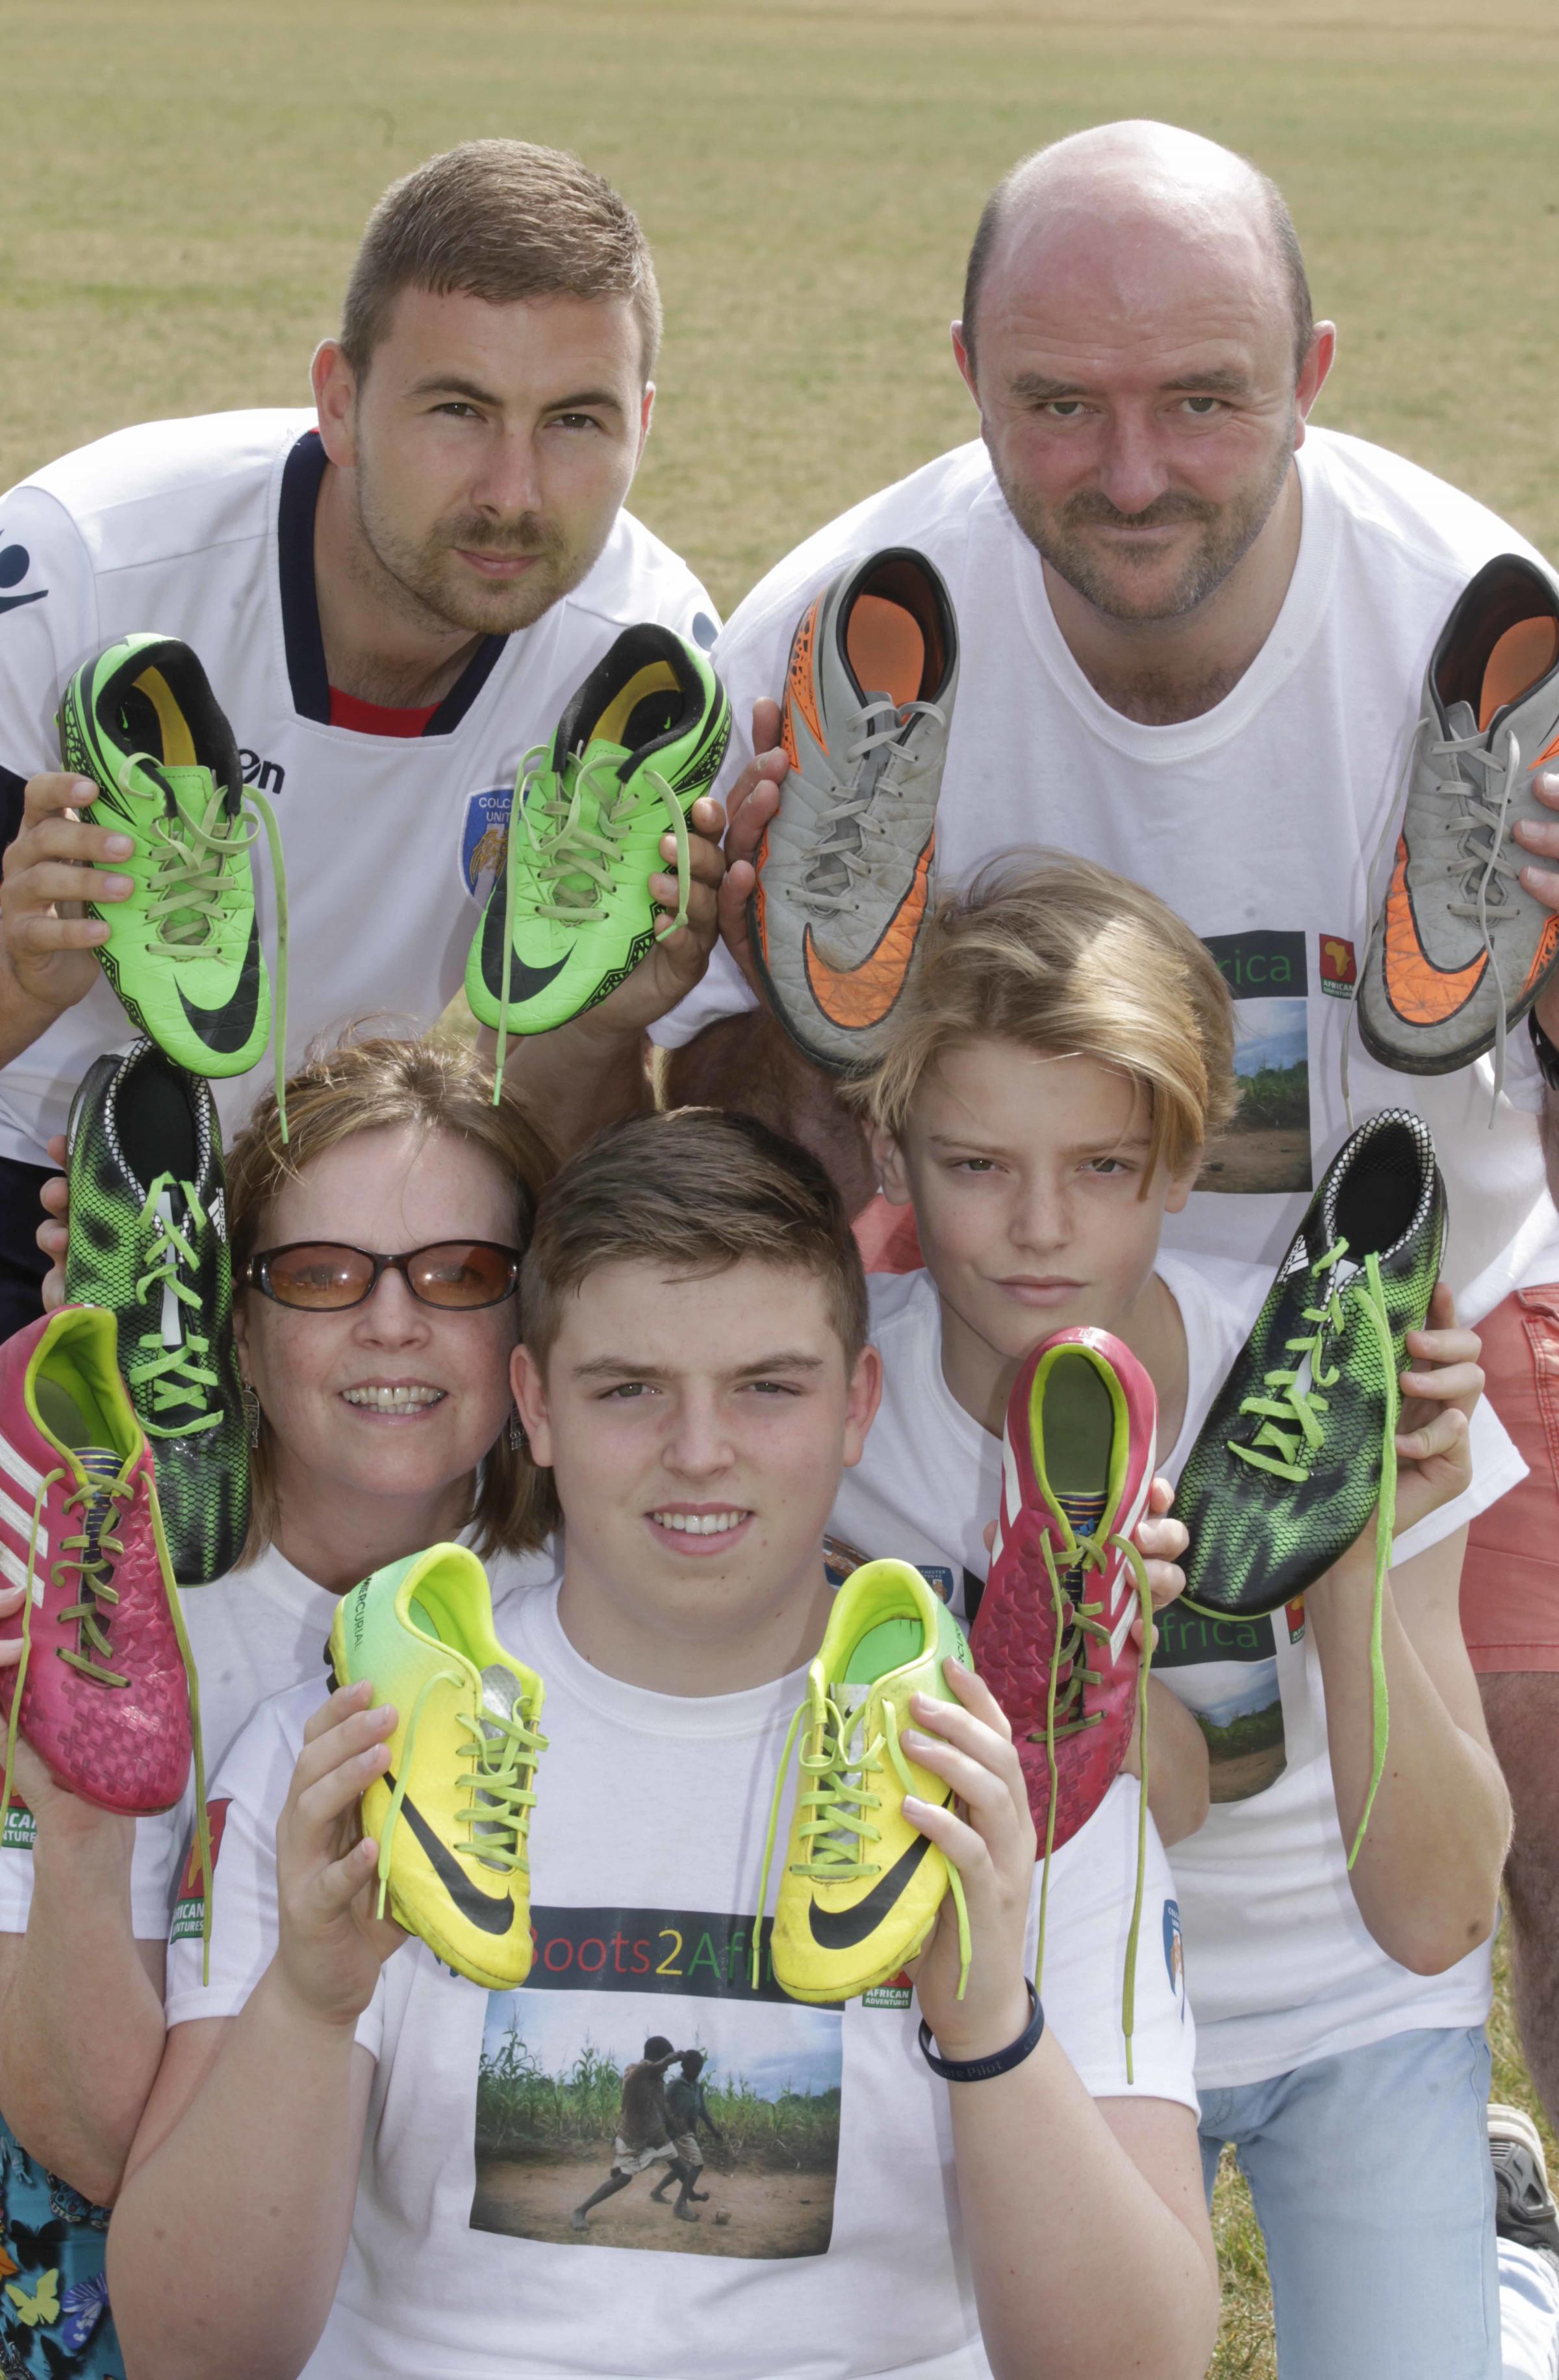 Iain Finch et sa famille, Jackie, Oscar et Toby avec Tom Tayler, Colchester United Football in the Community, ont créé Boots2Africa, une fondation pour livrer des milliers de chaussures de football d'enfants de Colchester et au-delà aux enfants de